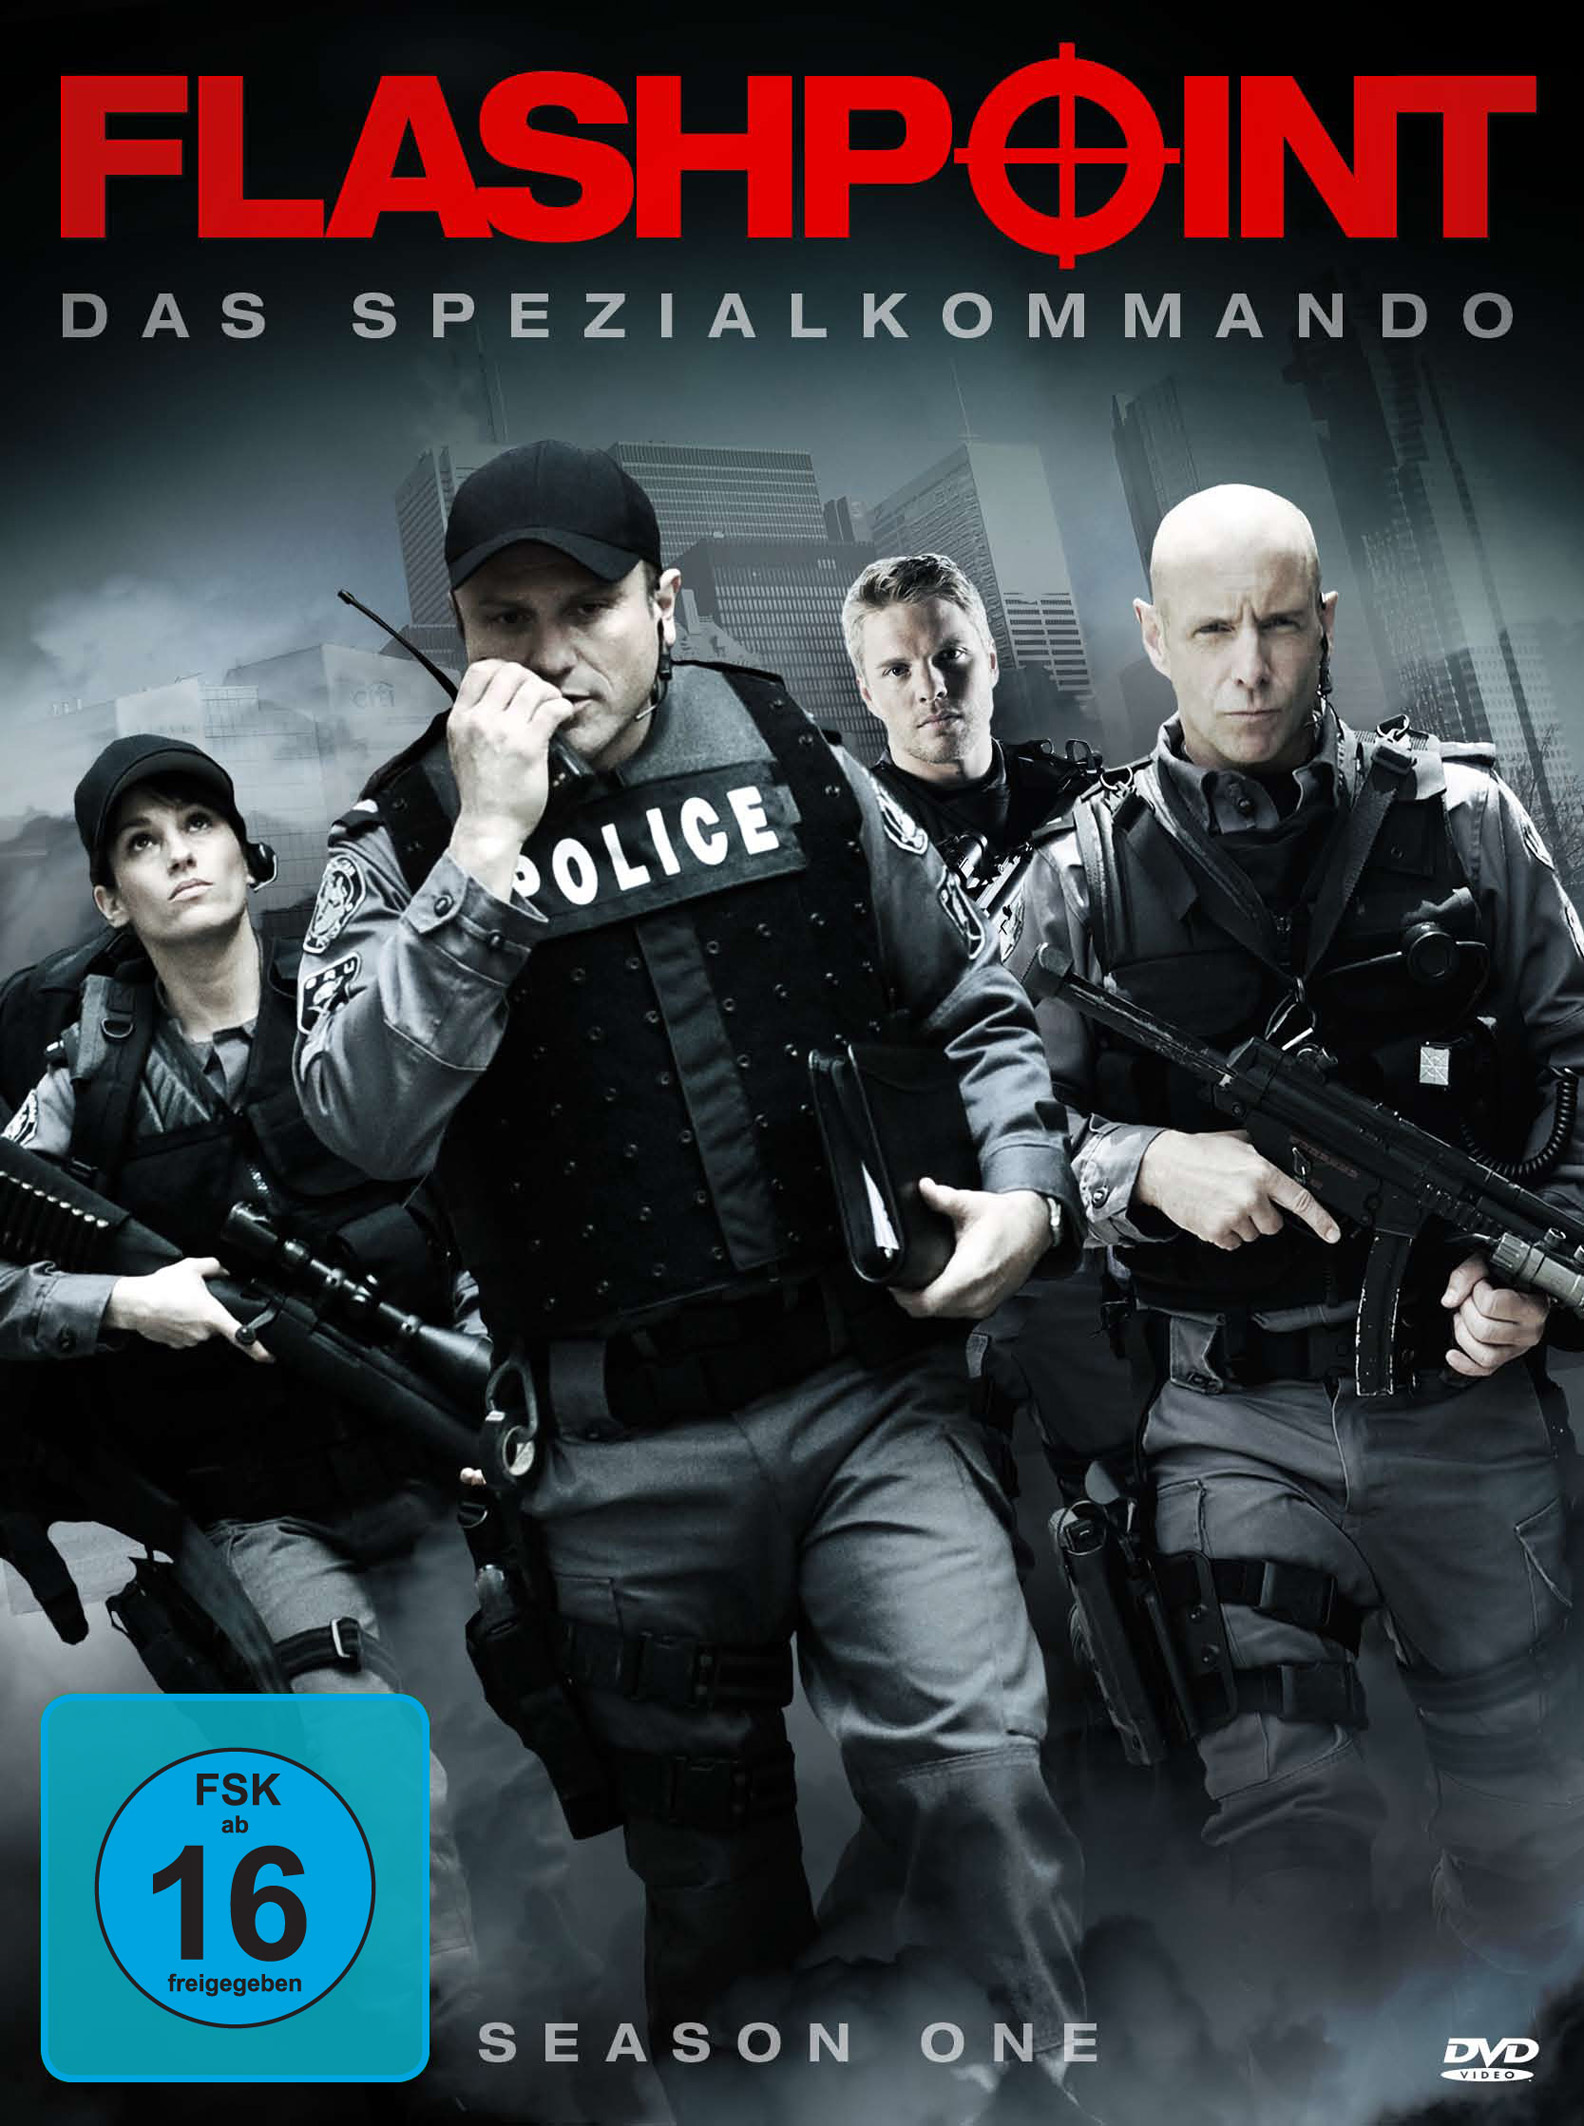 Spezialkommando, 1 DVD Staffel Das - Flashpoint